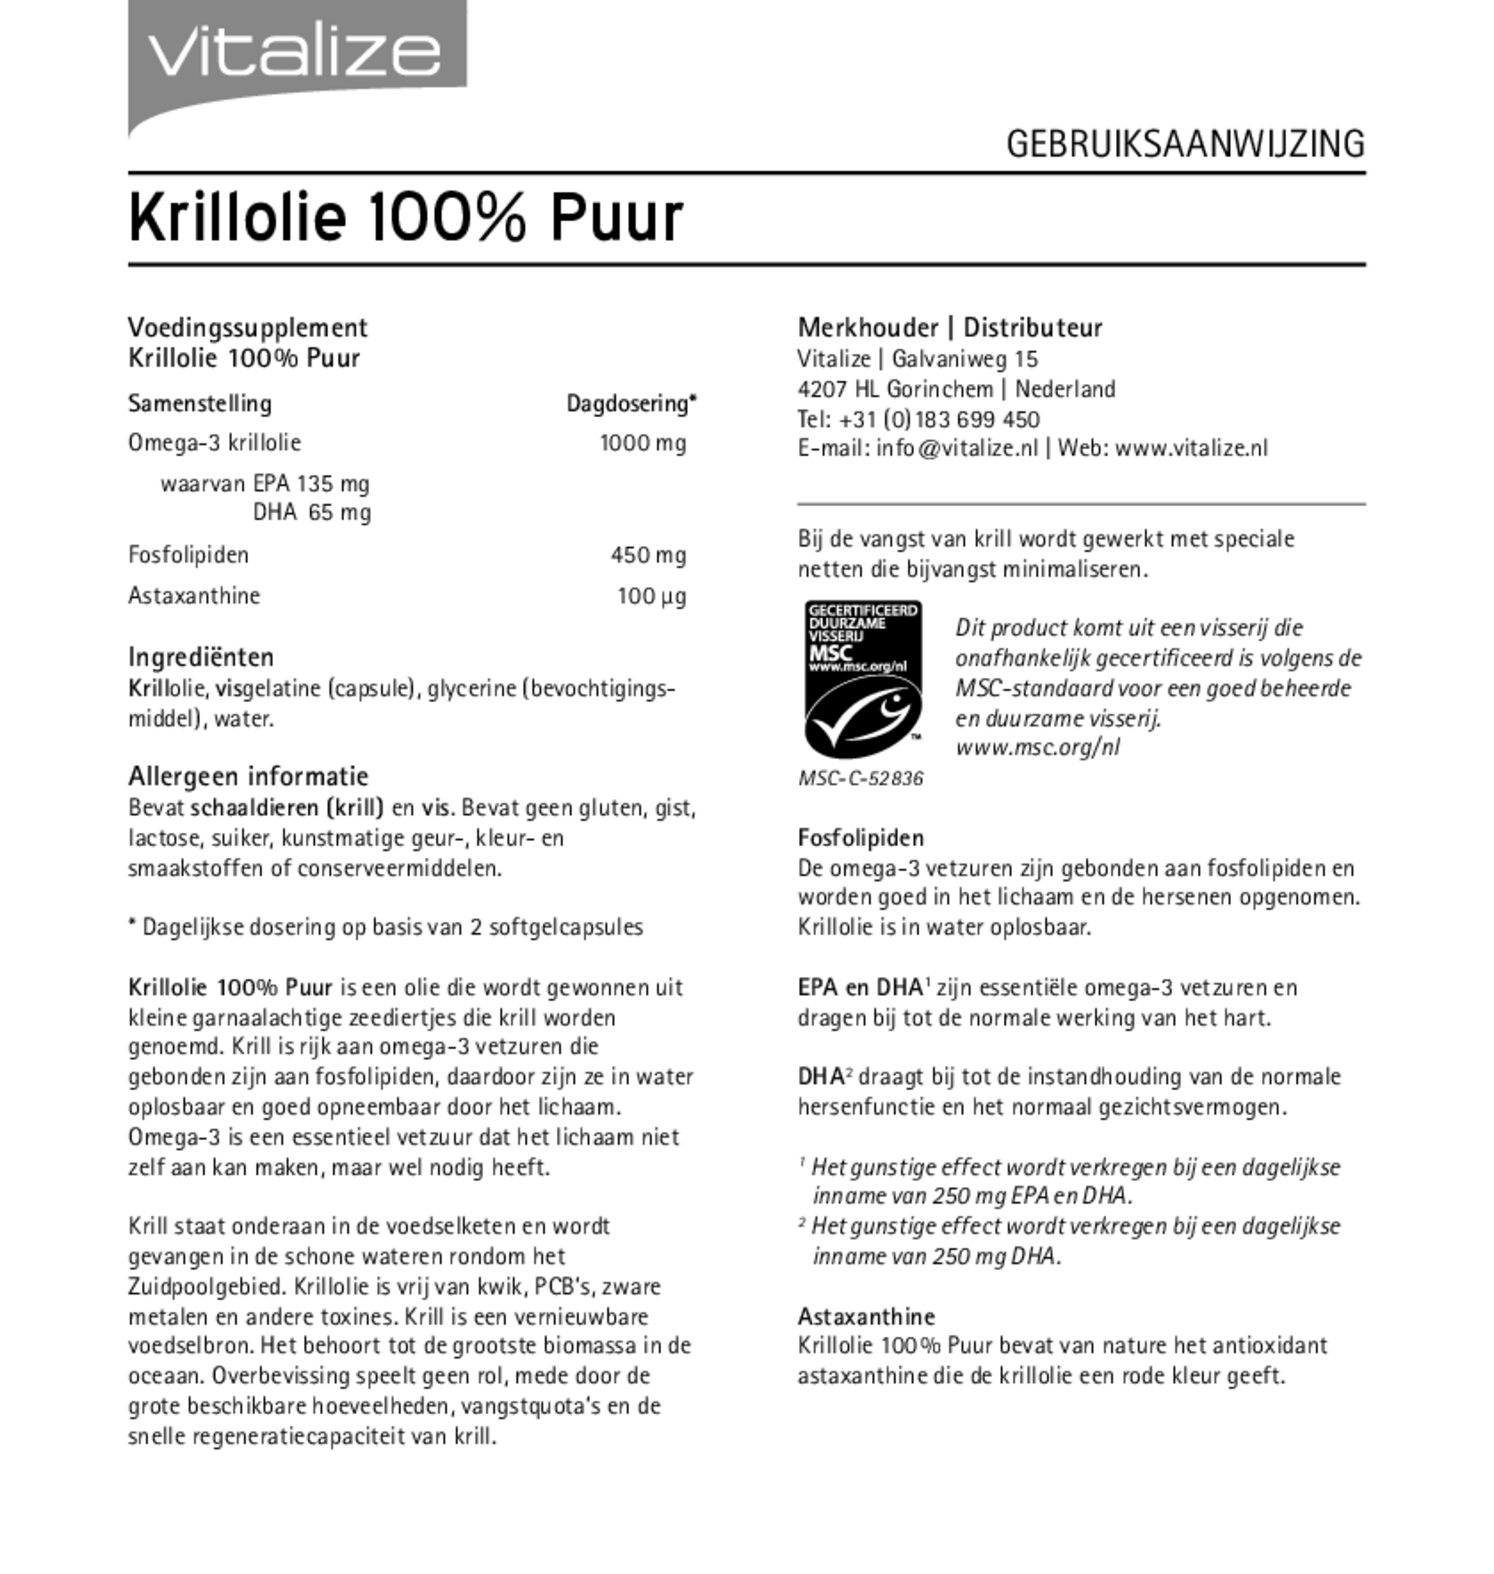 Krillolie 100% Puur Capsules Voordeelverpakking afbeelding van document #1, gebruiksaanwijzing